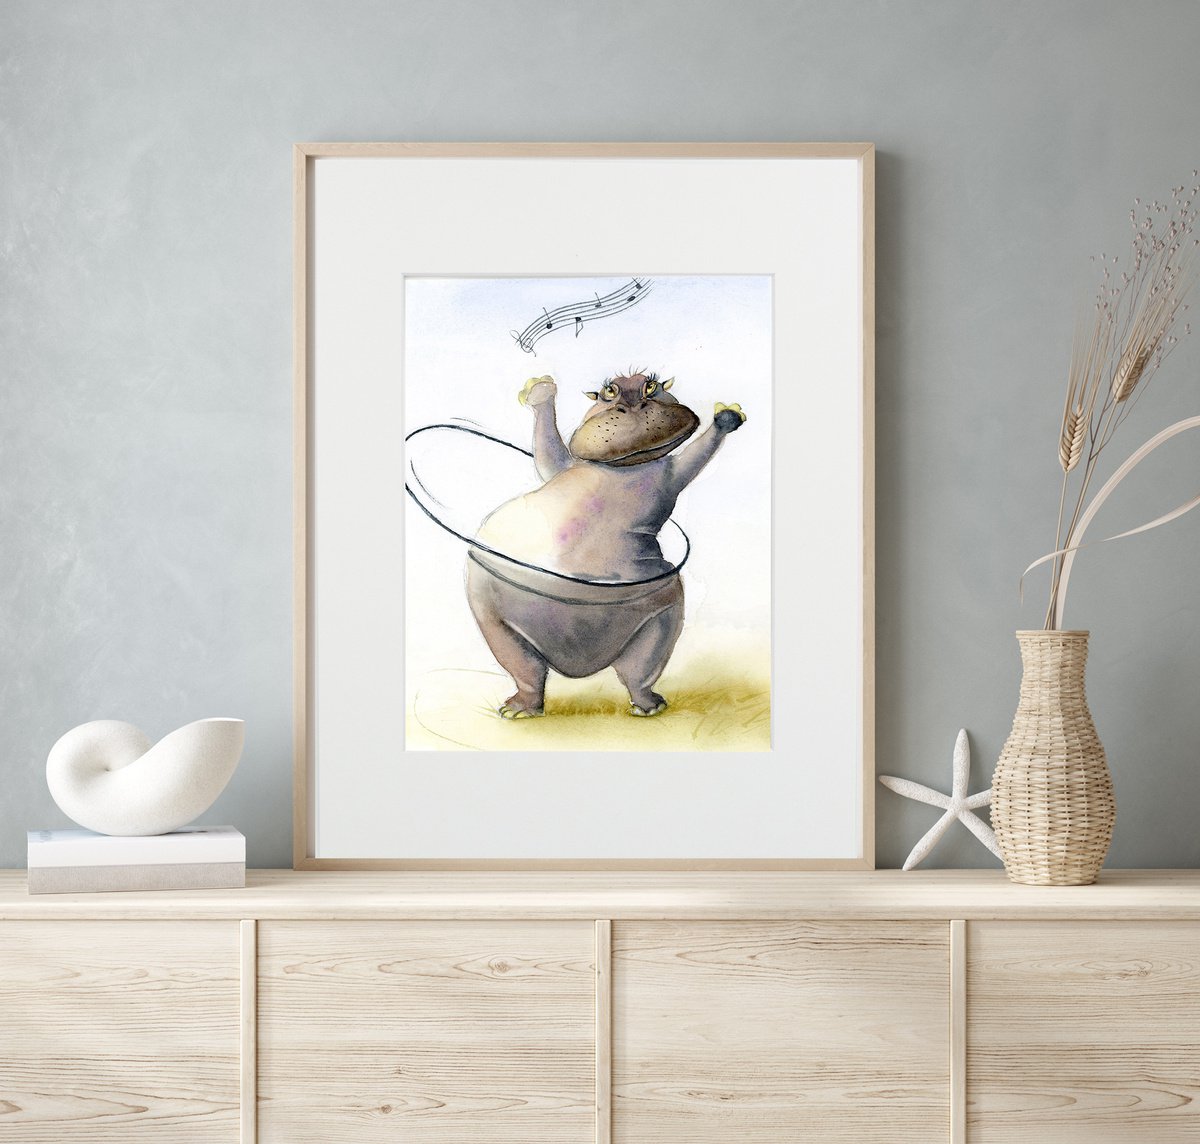 Dancing Hippo (Mounted original watercolor artwork) by Olga Shefranov (Tchefranova)